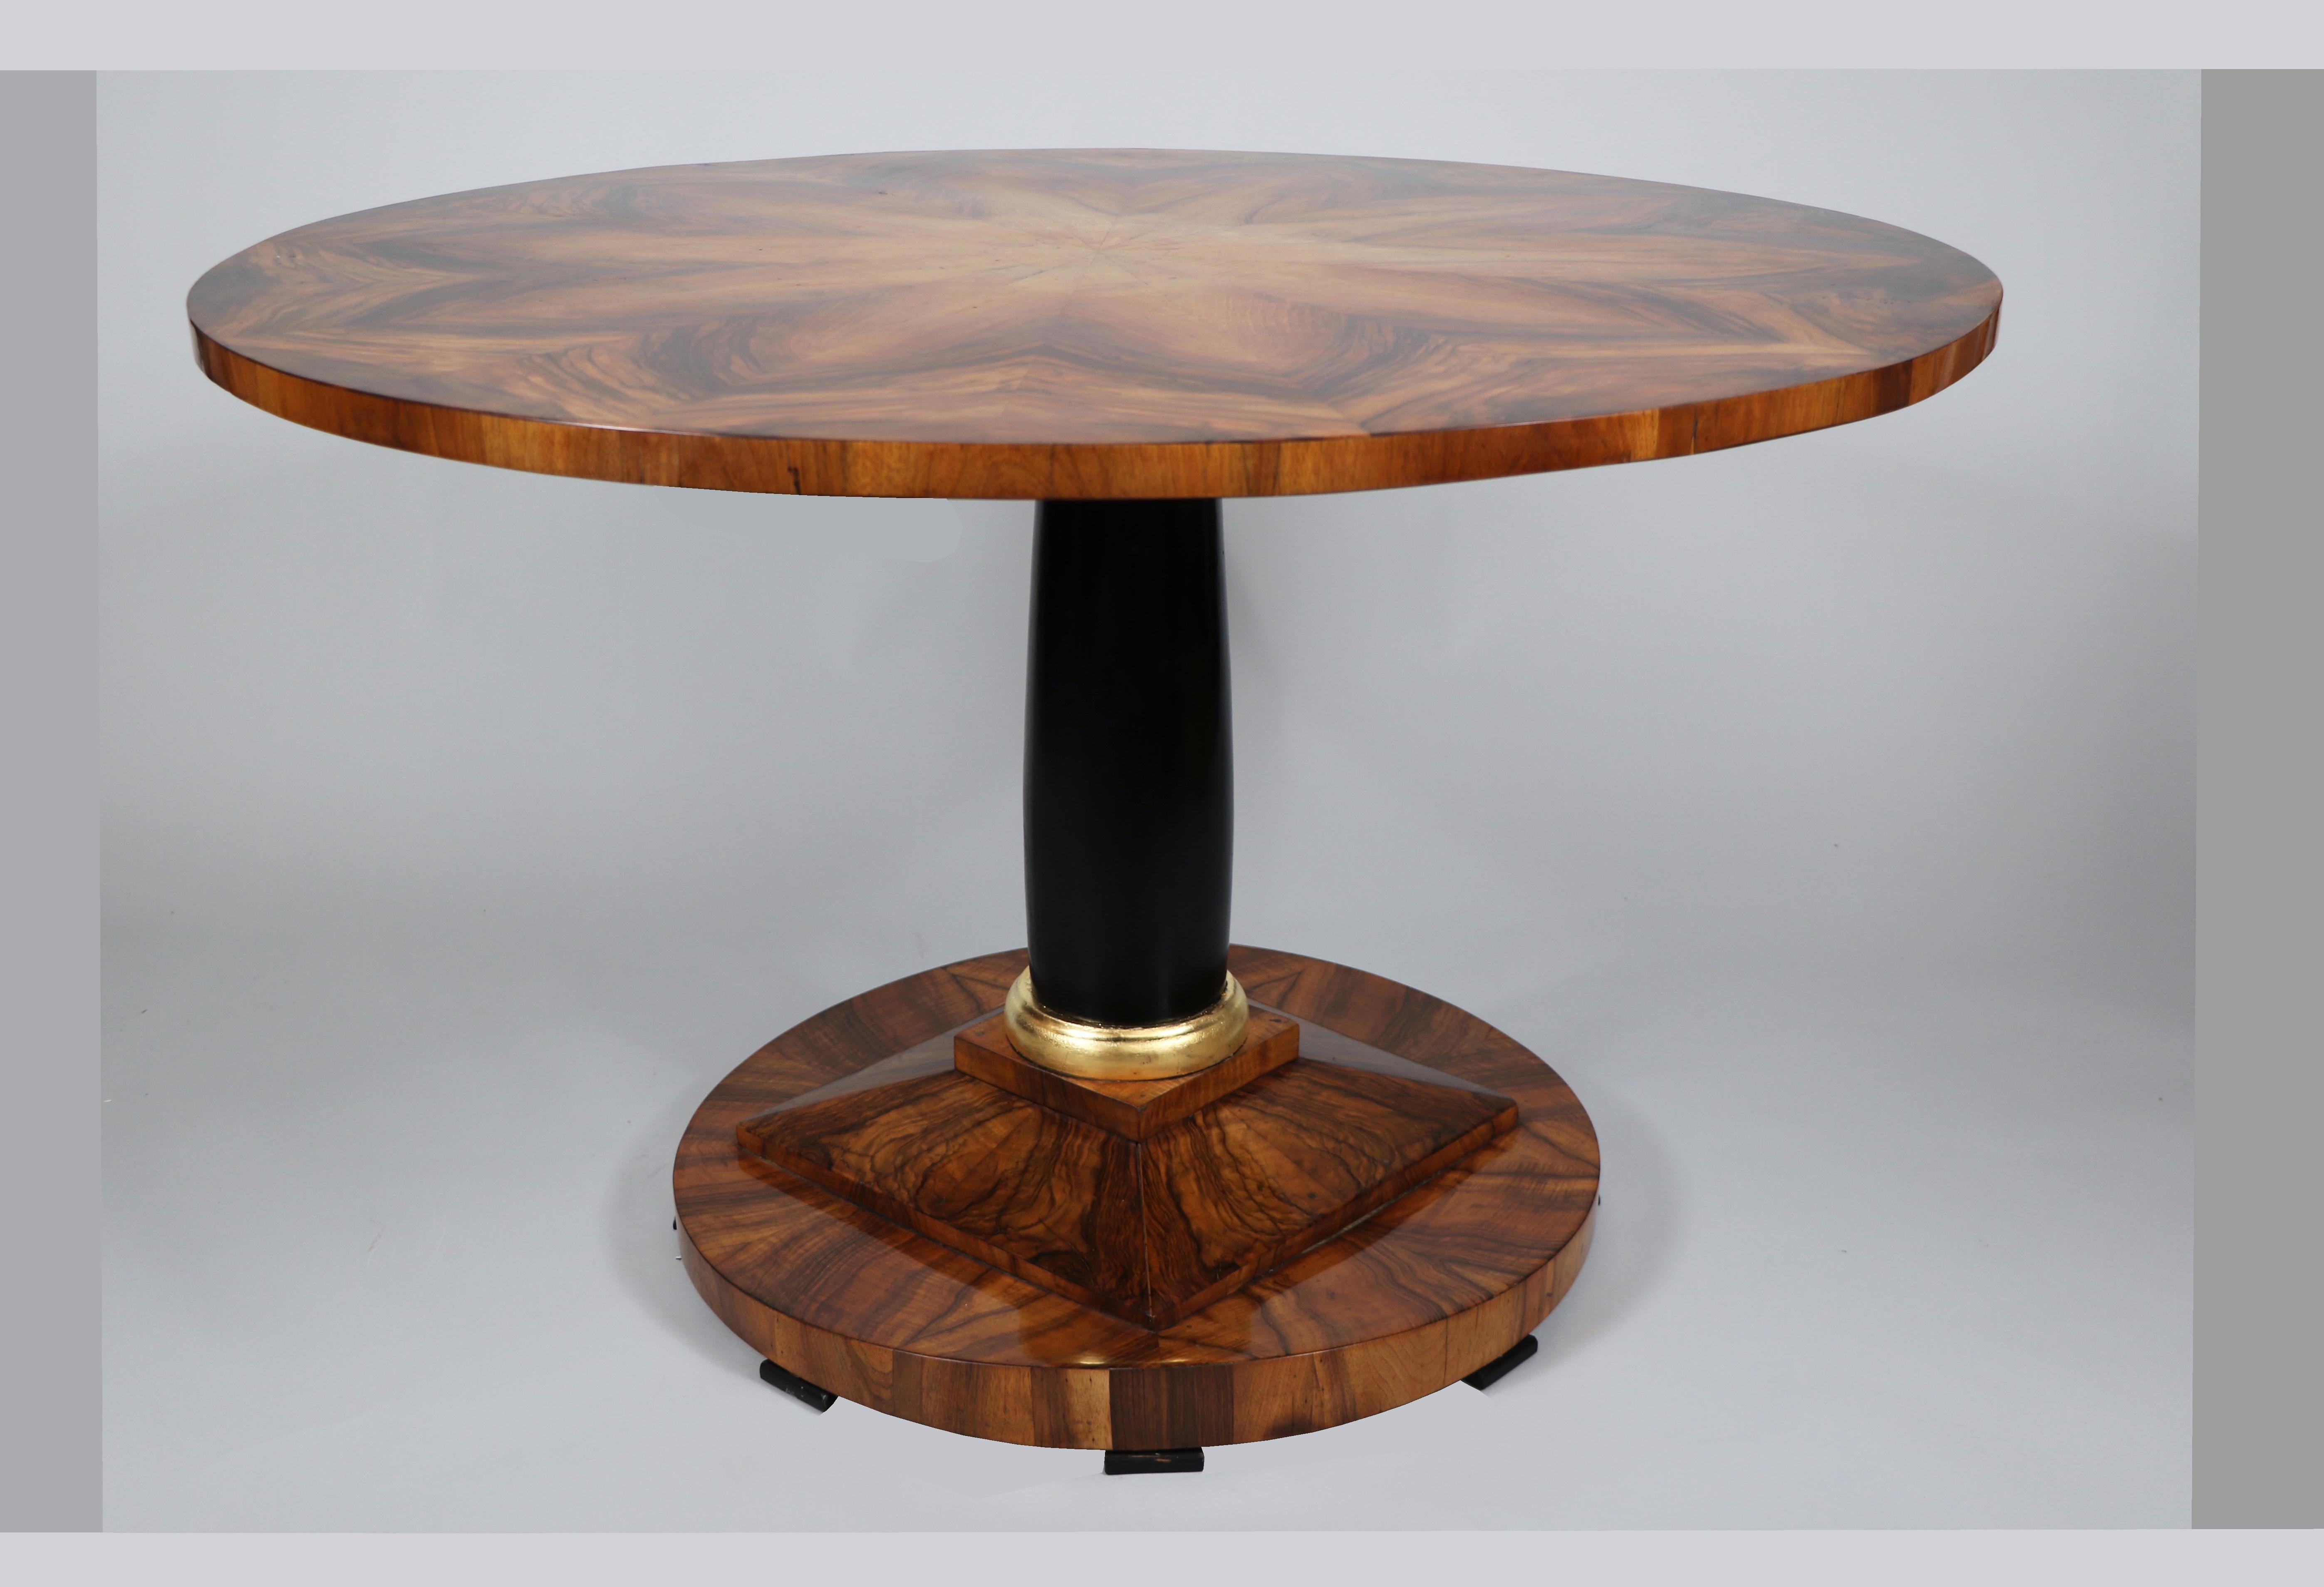 Hallo,
Dieser elegante und große Biedermeier-Sockeltisch aus Nussbaumholz ist das beste Beispiel für ein hochwertiges Wiener Stück aus der Zeit um 1820-25.

Das Wiener Biedermeier zeichnet sich durch seine raffinierten Proportionen, sein seltenes